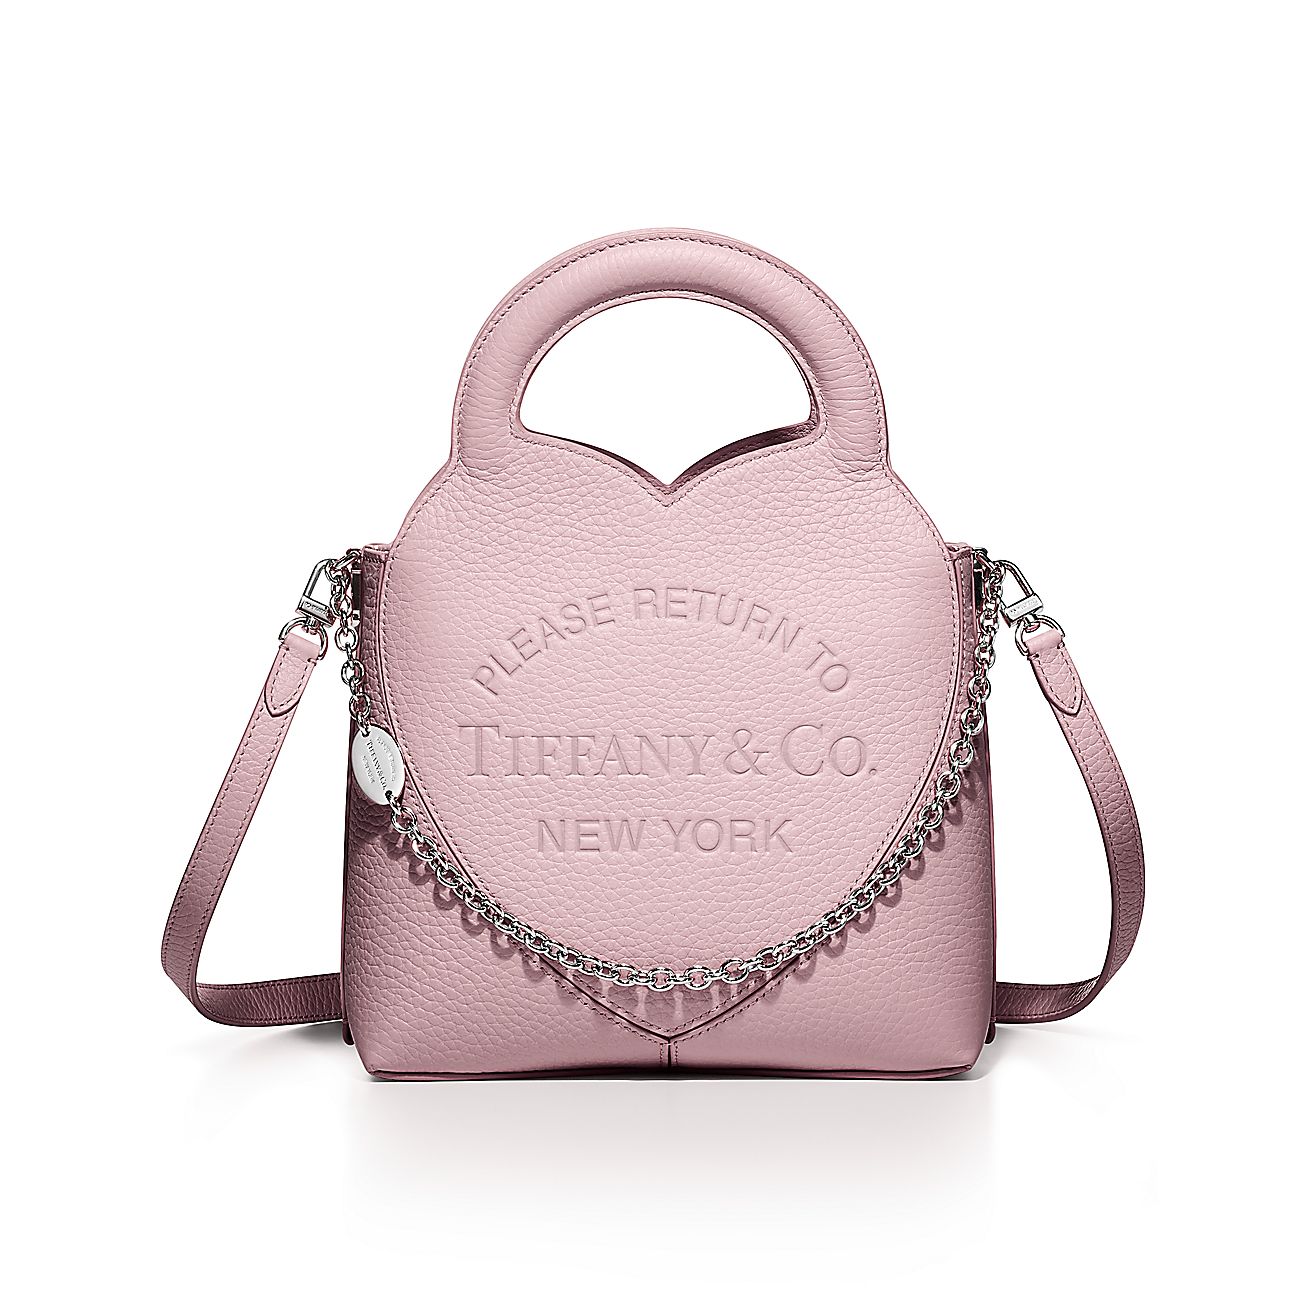 Small heart shaped handbag with detachable crossbody strap